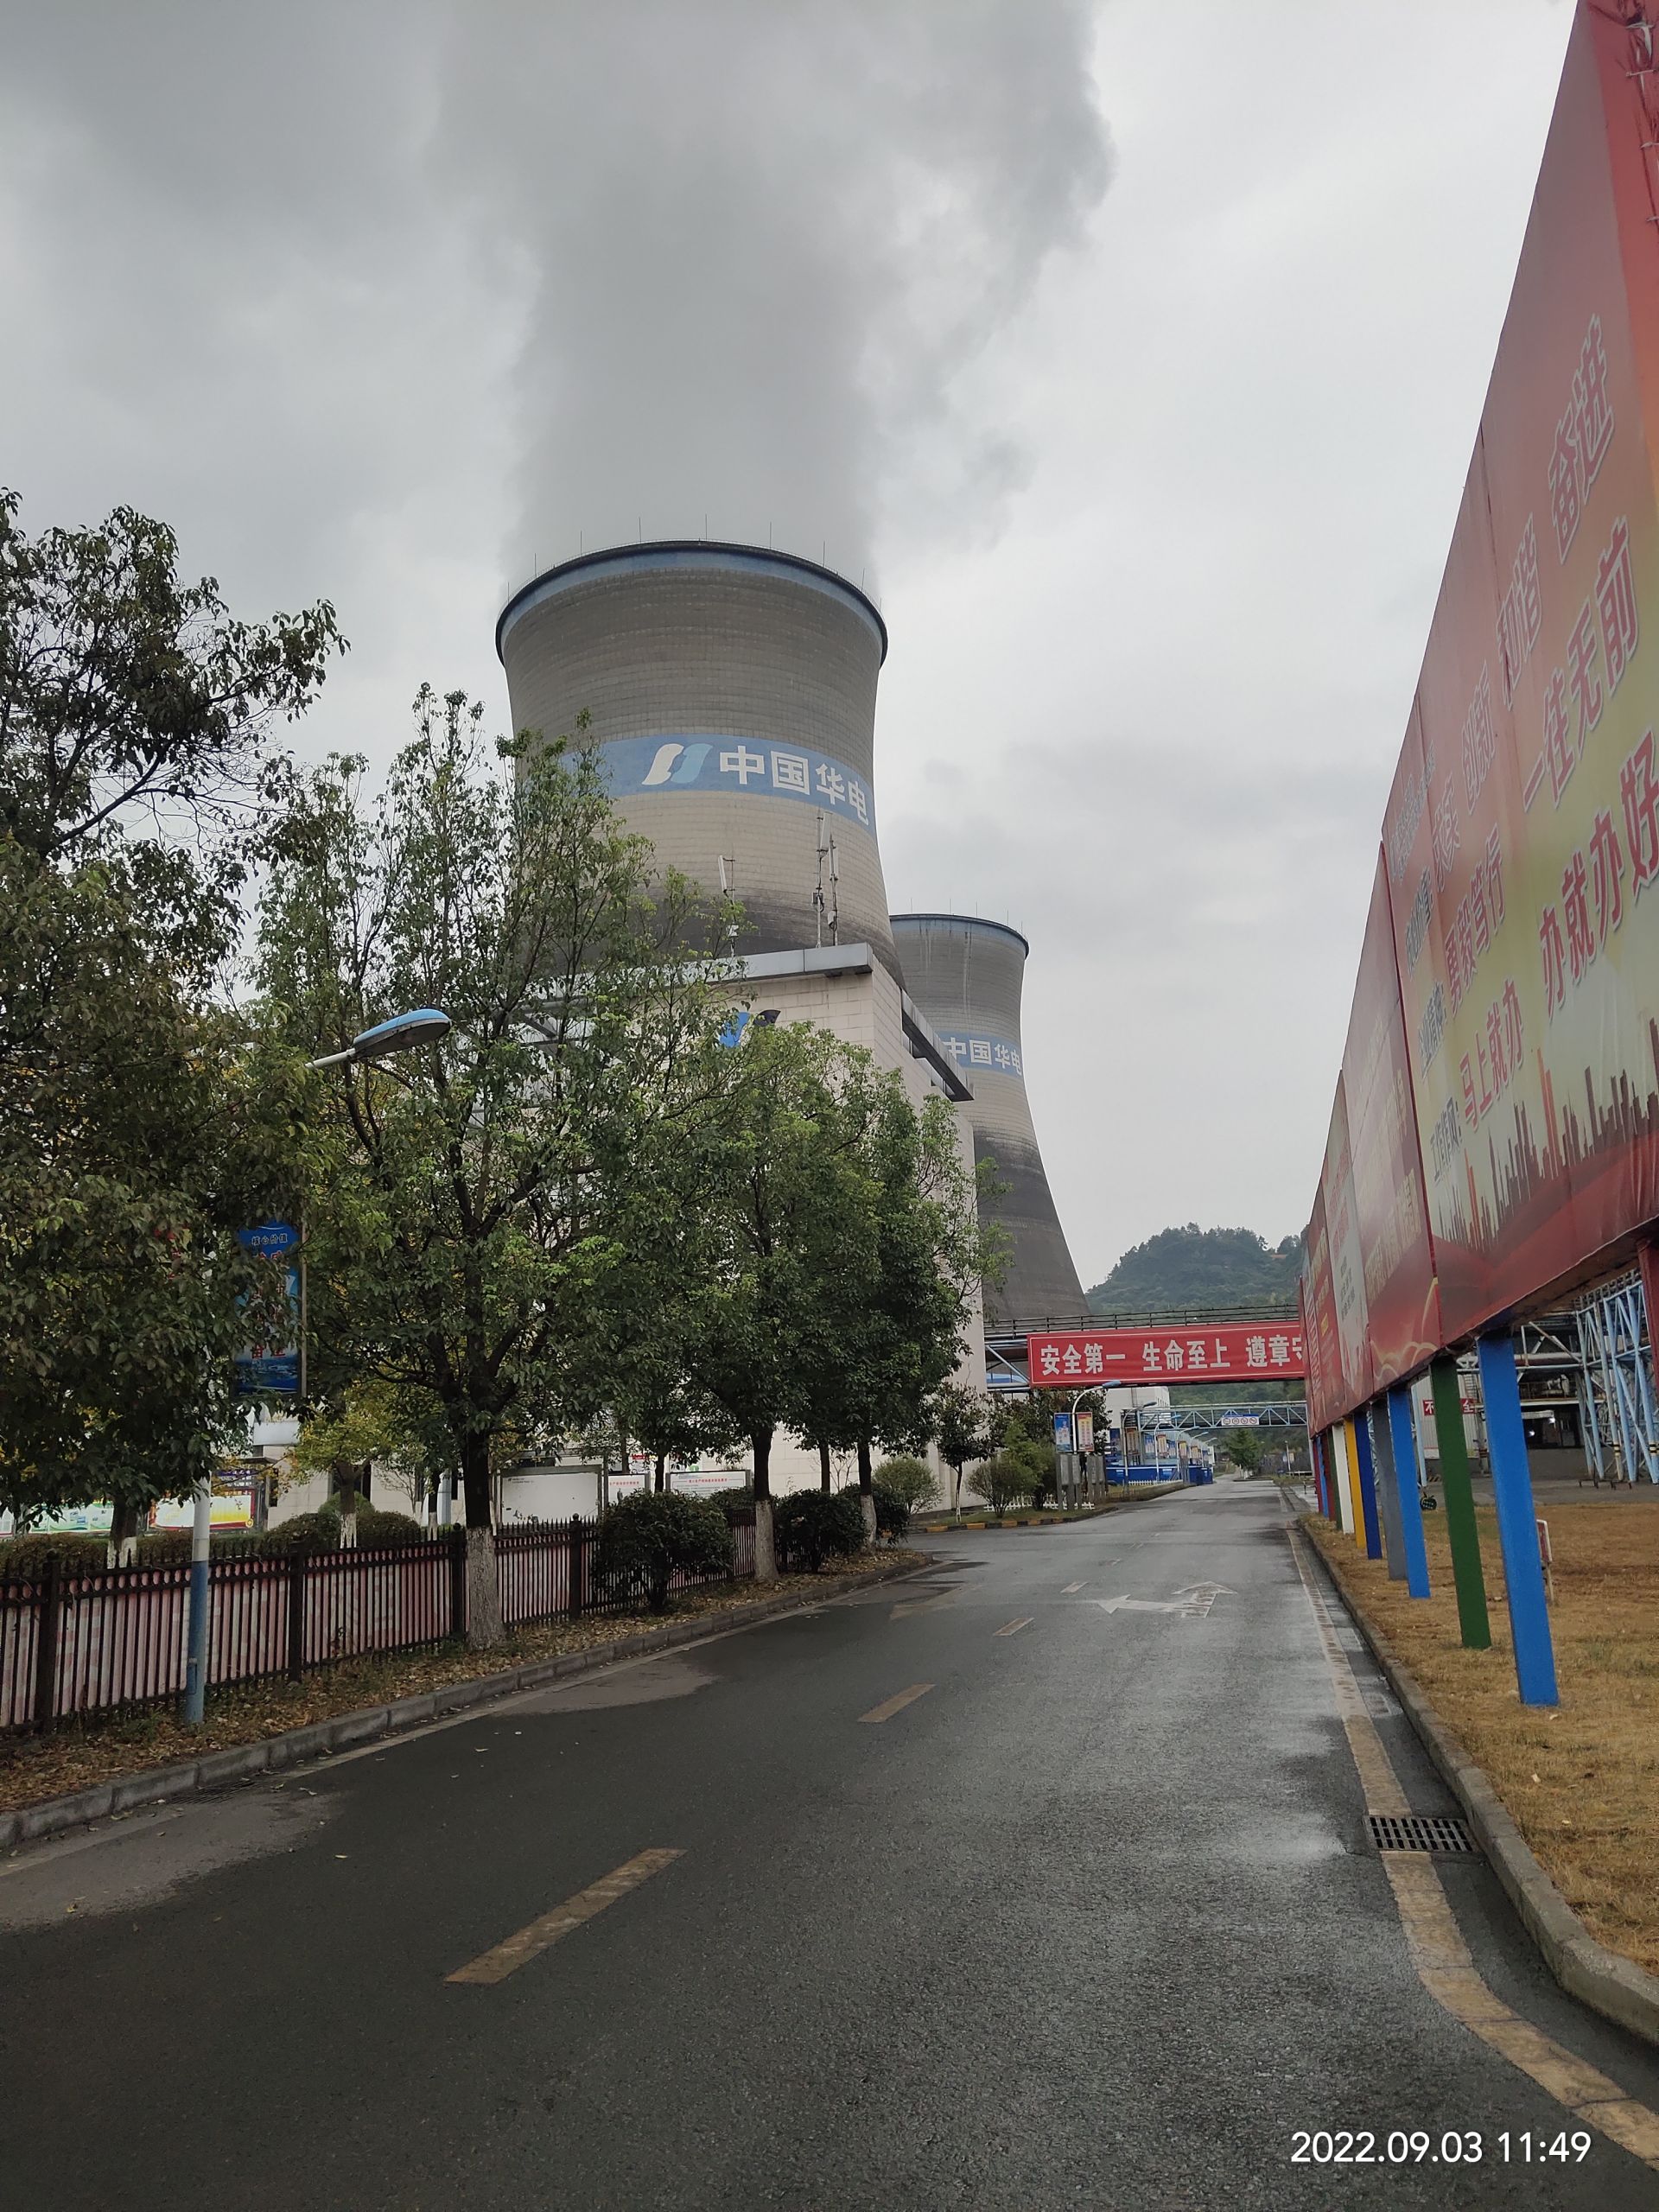 四川广安发电有限责任公司三期2600MW超低排放改造项目脱硫EPC工程 吸收塔喷淋层支管   华电环保系统工程有限公司